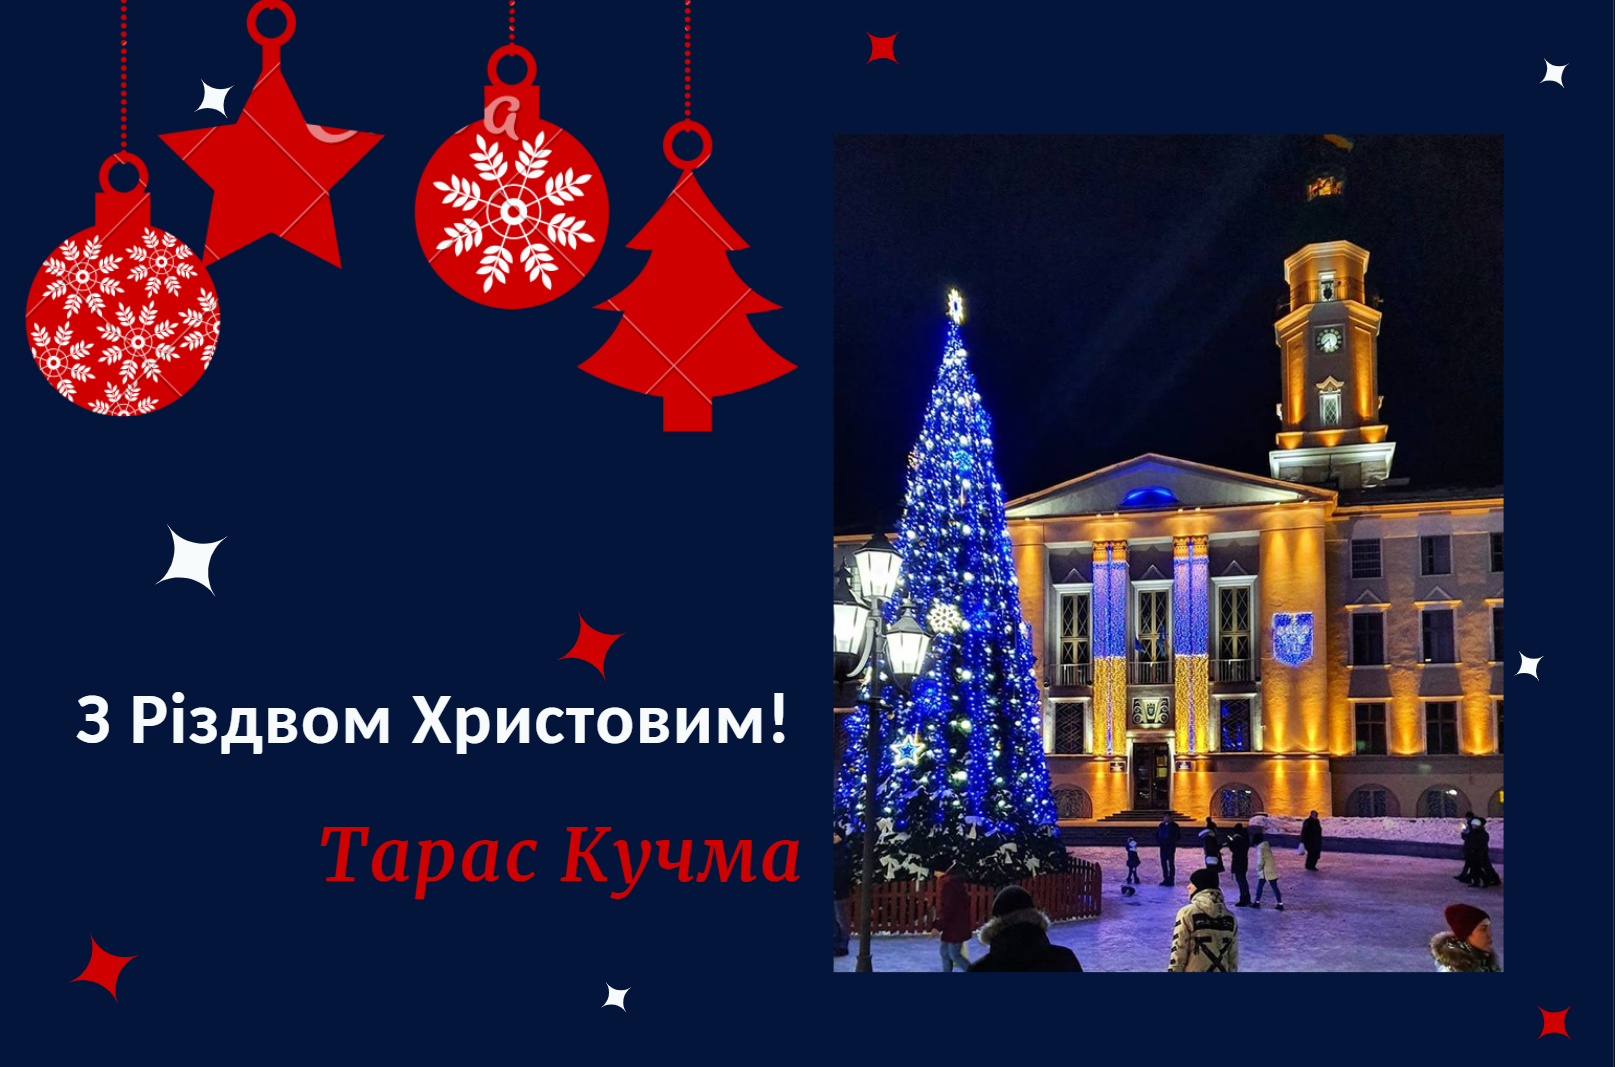 Тарас Кучма: Не забуваймо подякувати та привітати тих, хто захищає нас на сході країни та святкуватиме Різдво в окопах